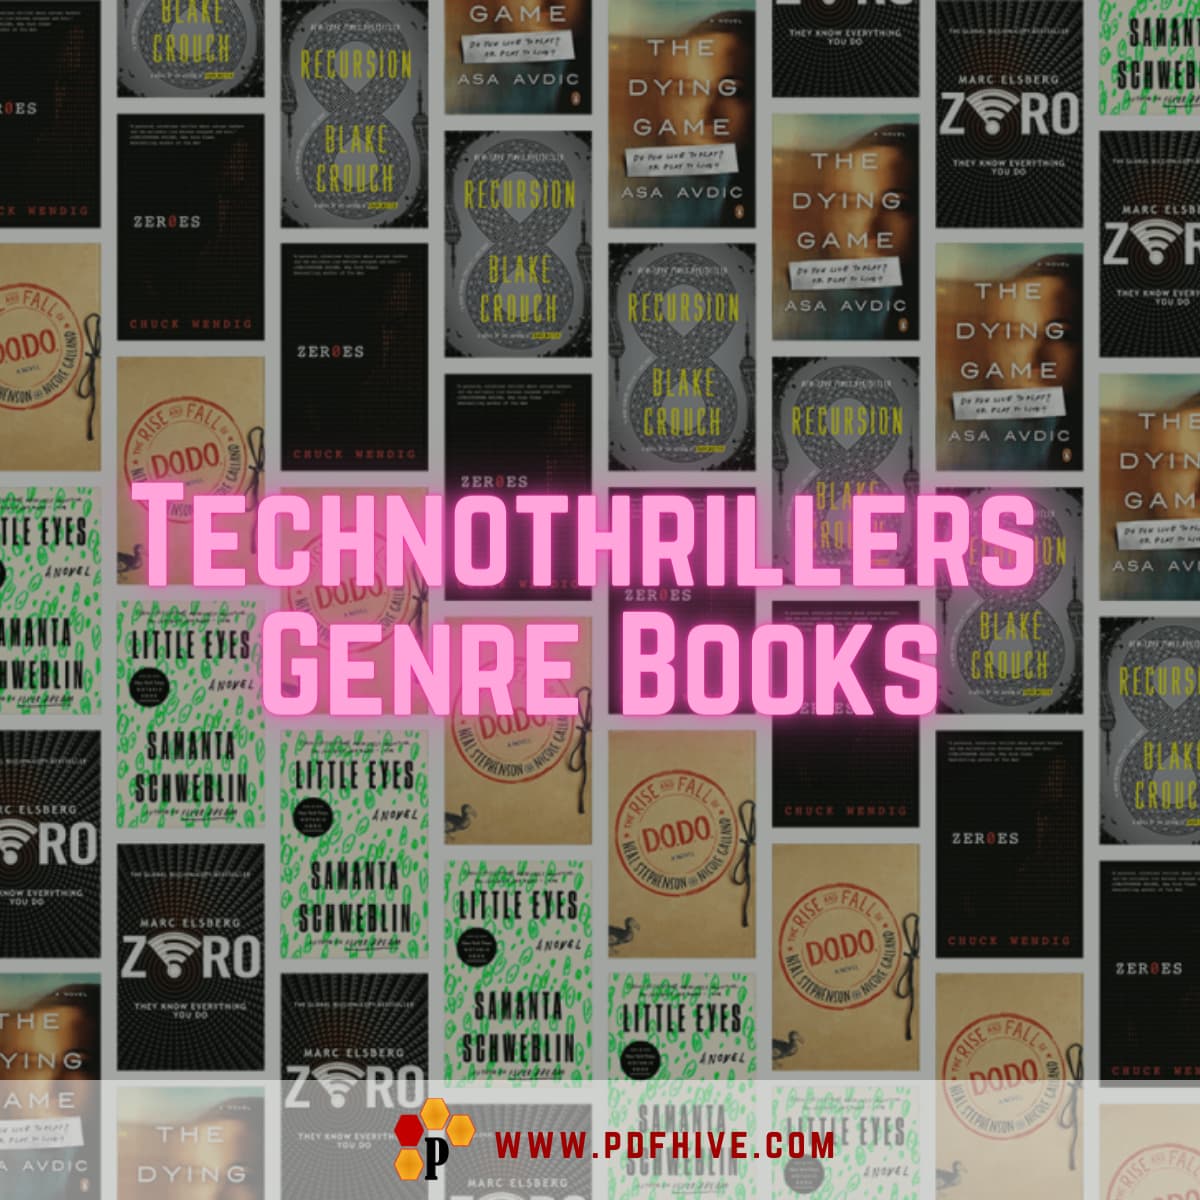 Technothrillers Genre Books